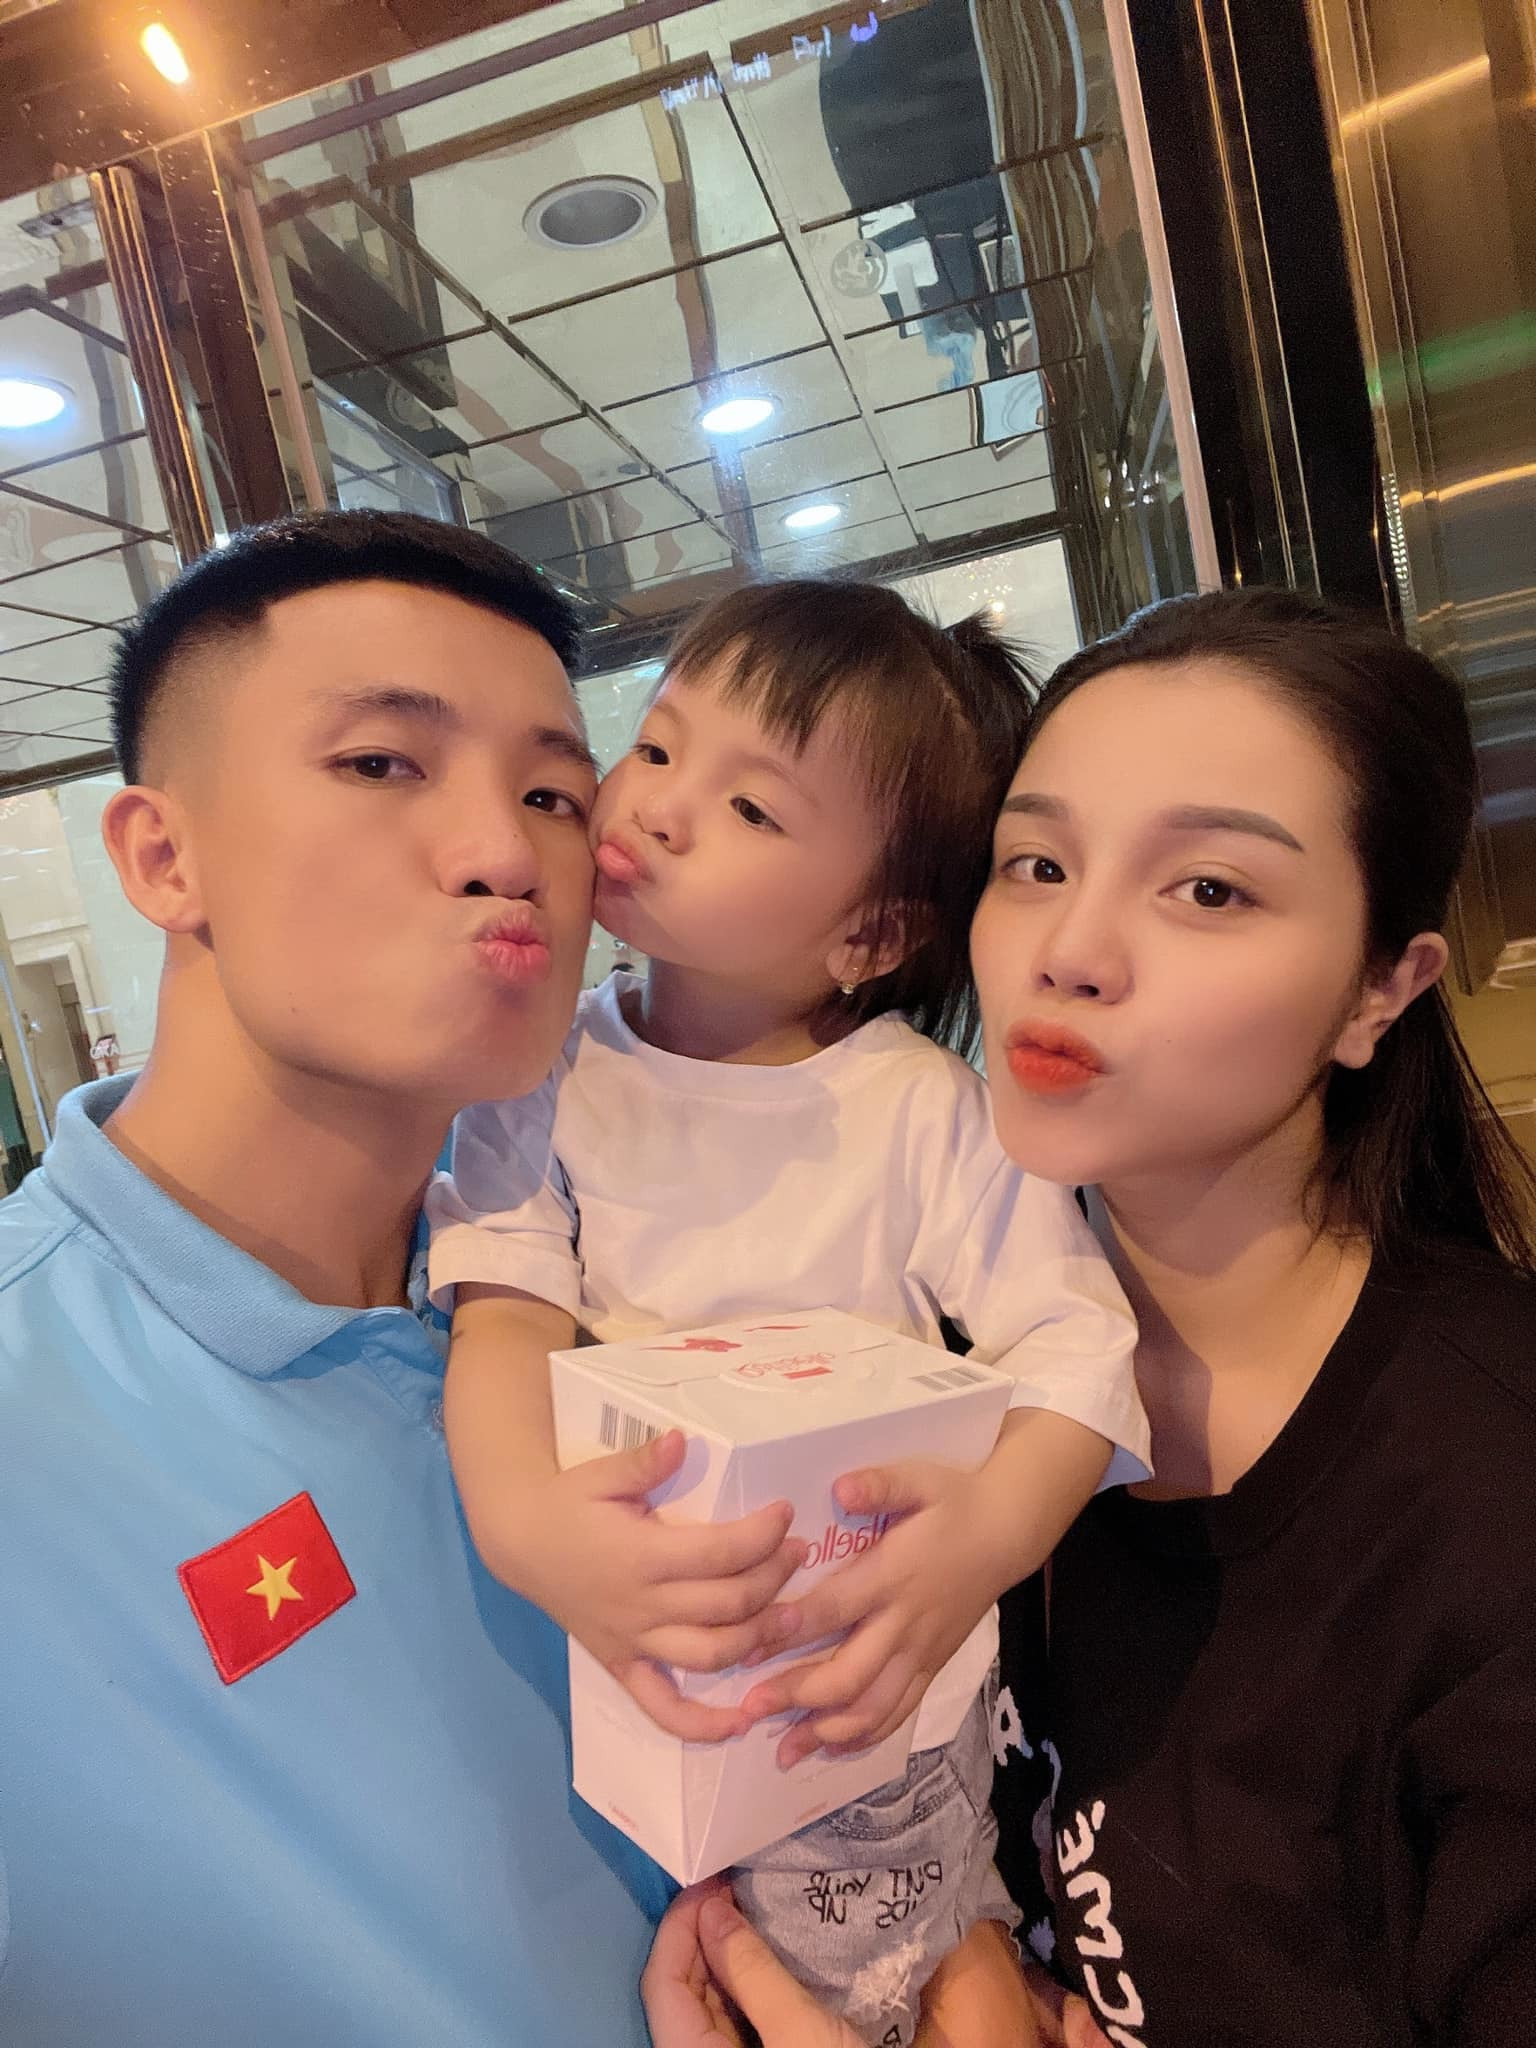 Thầy Park trải lòng dịp sinh nhật mẹ tiết lộ từng dạy cầu thủ Việt Nam  một điều đặc biệt  Tinmoi